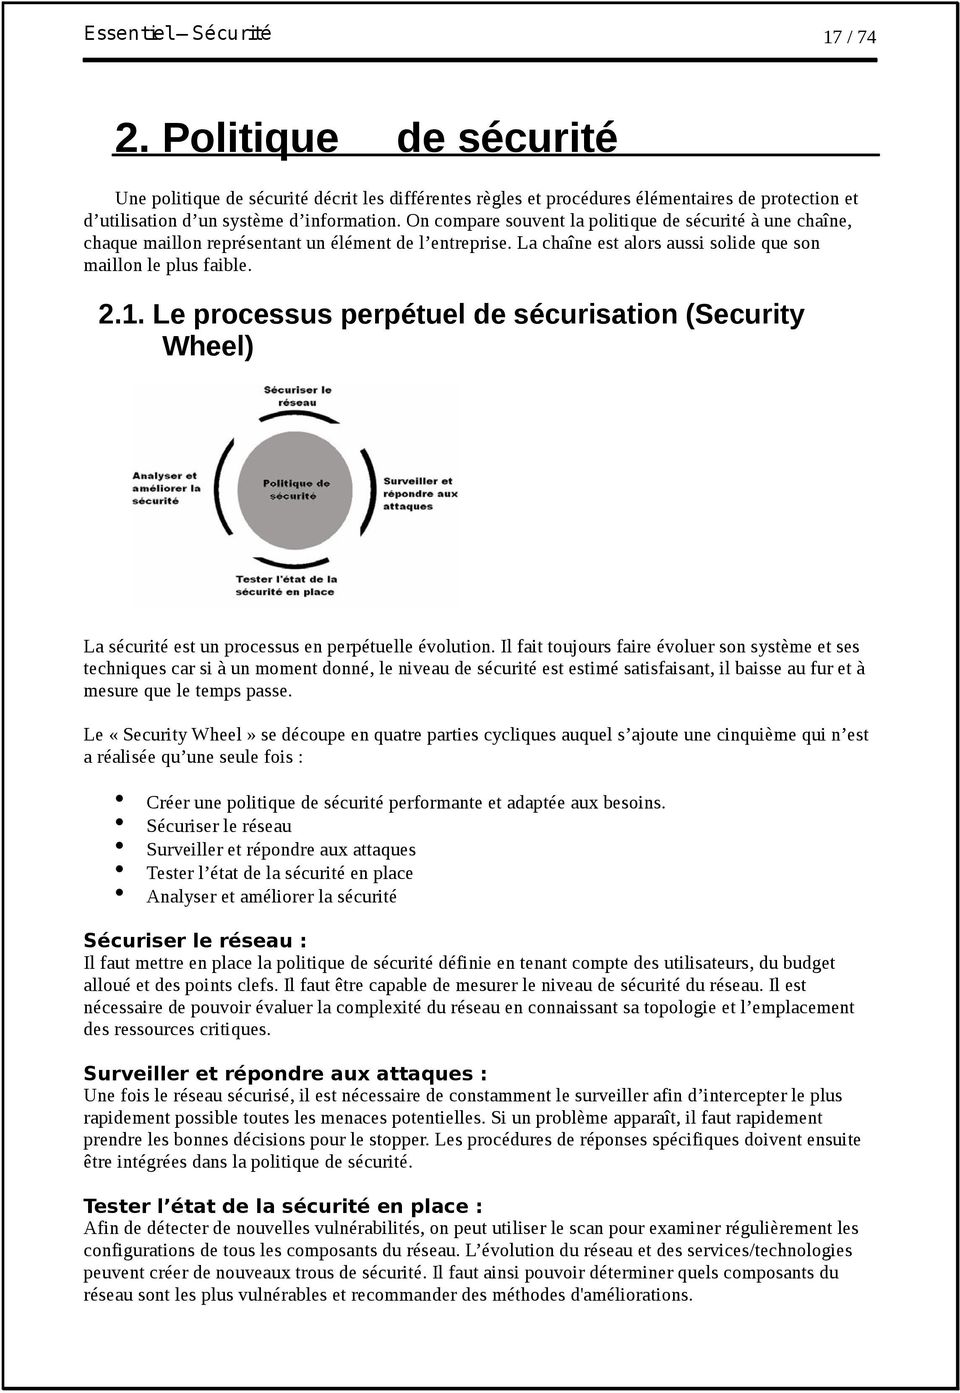 Le processus perpétuel de sécurisation (Security Wheel) La sécurité est un processus en perpétuelle évolution.